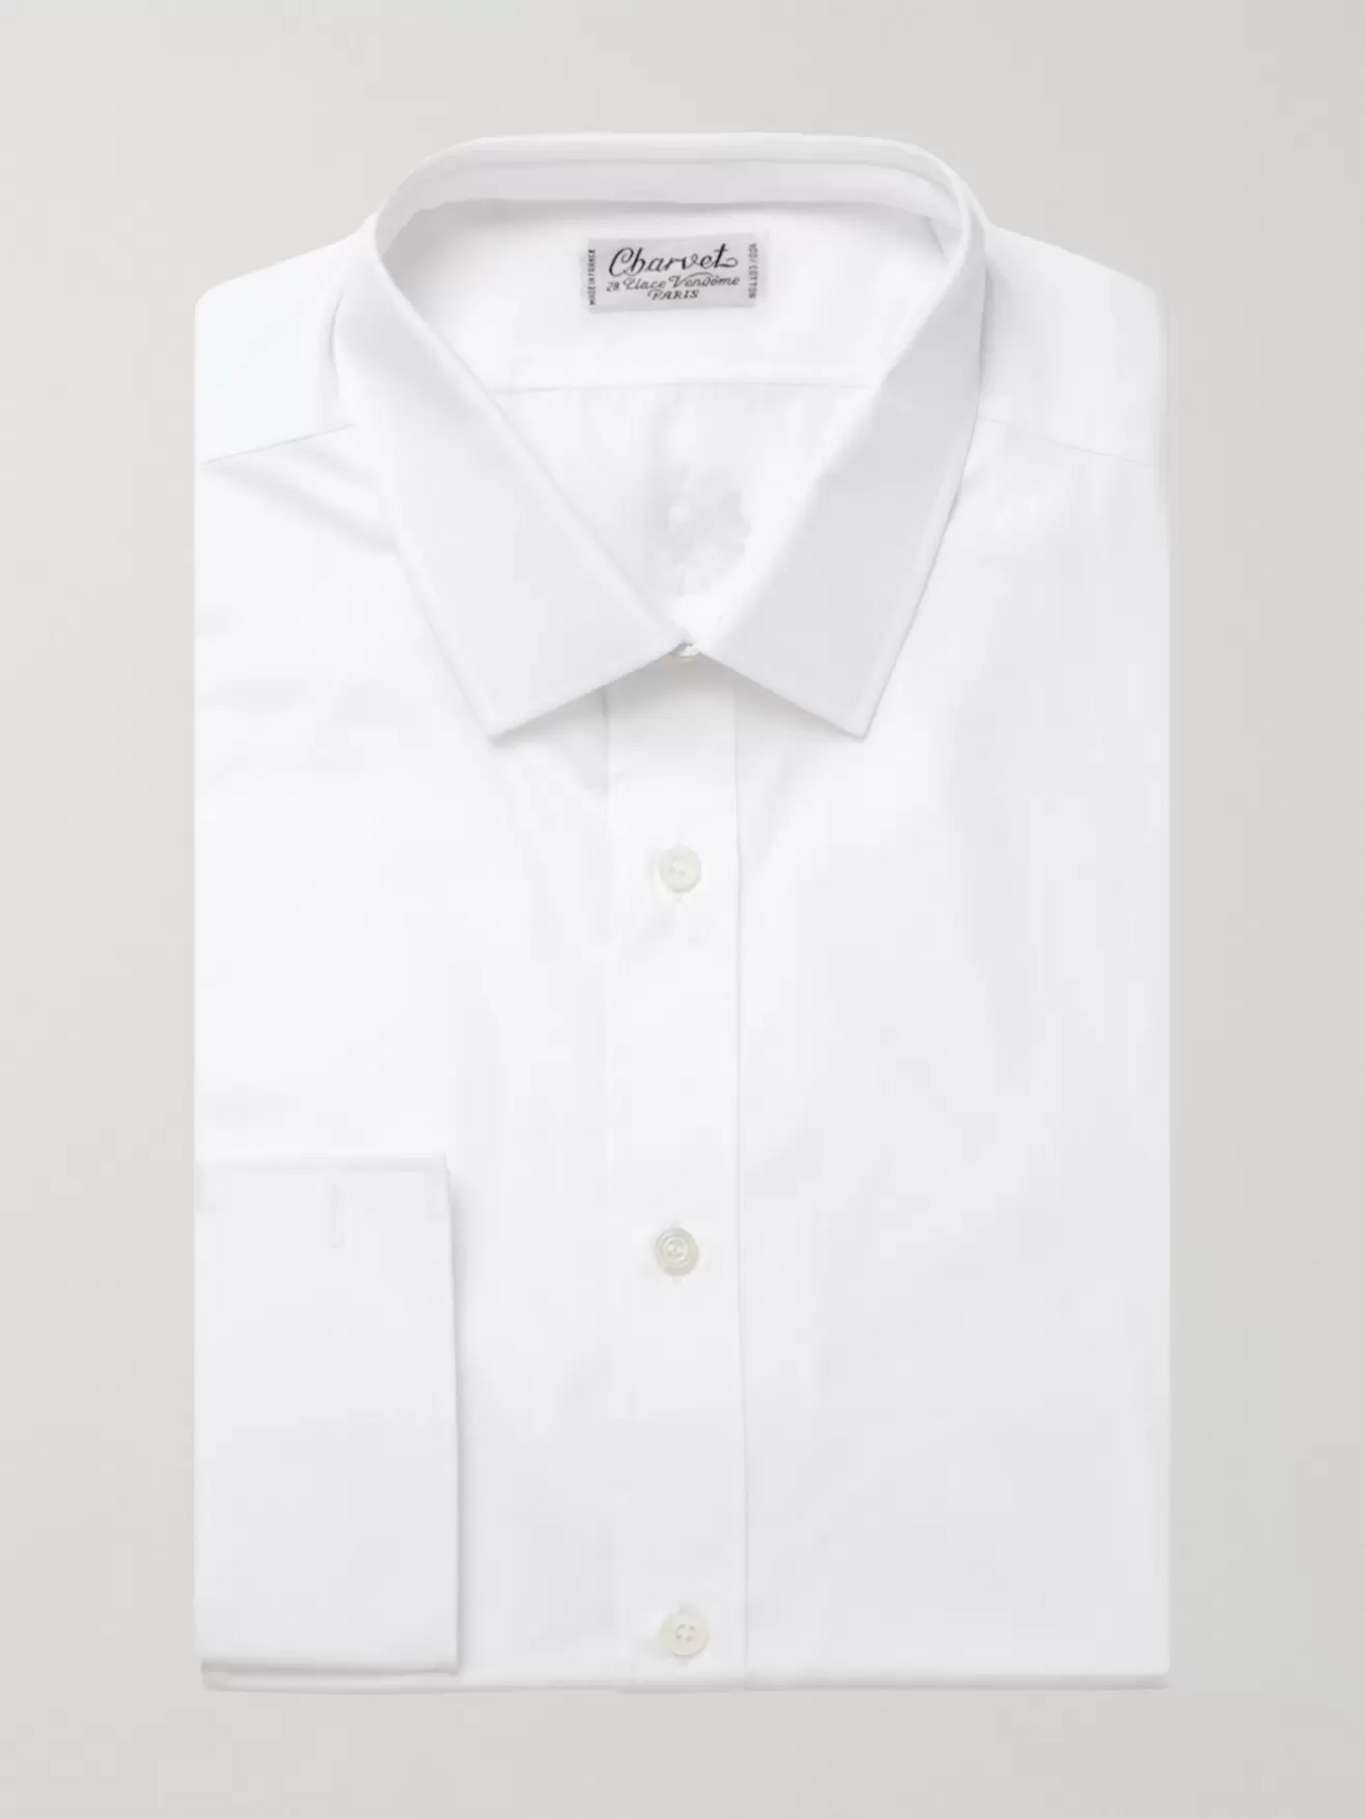 Crisp white shirt - Charvet shirt at MR PORTER - £360